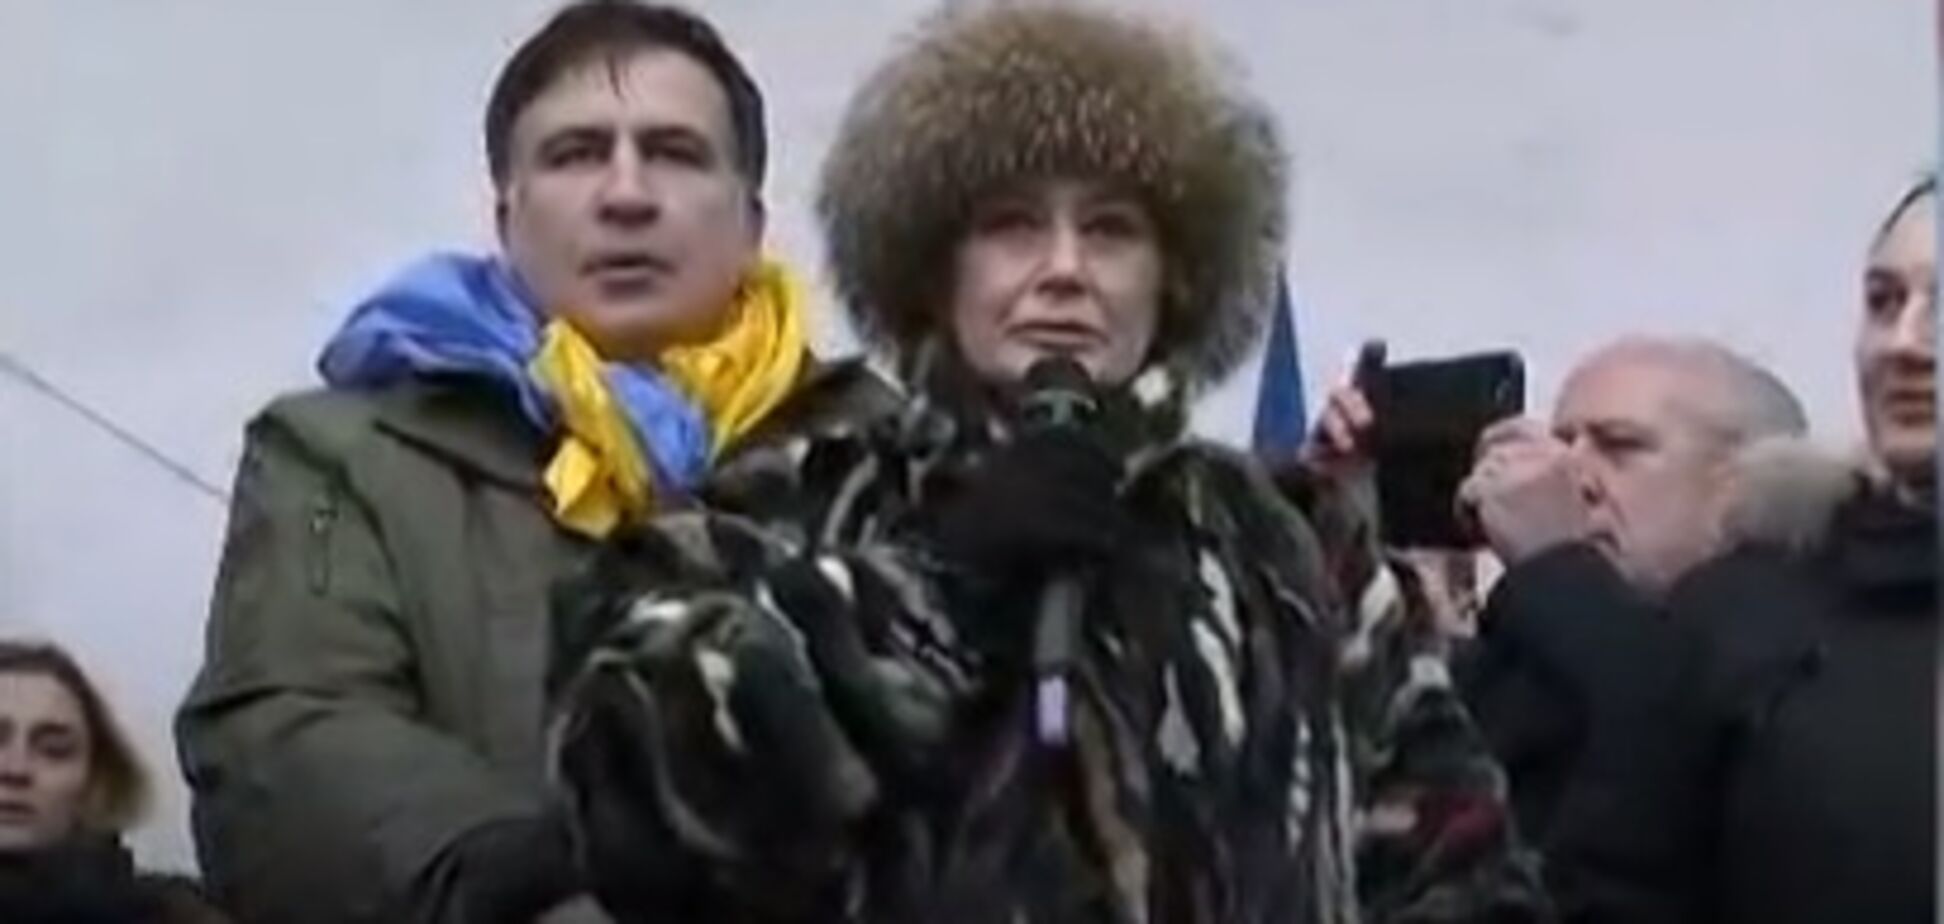 На митинге Саакашвили выступила евродепутат из партии друга Путина: сеть в шоке